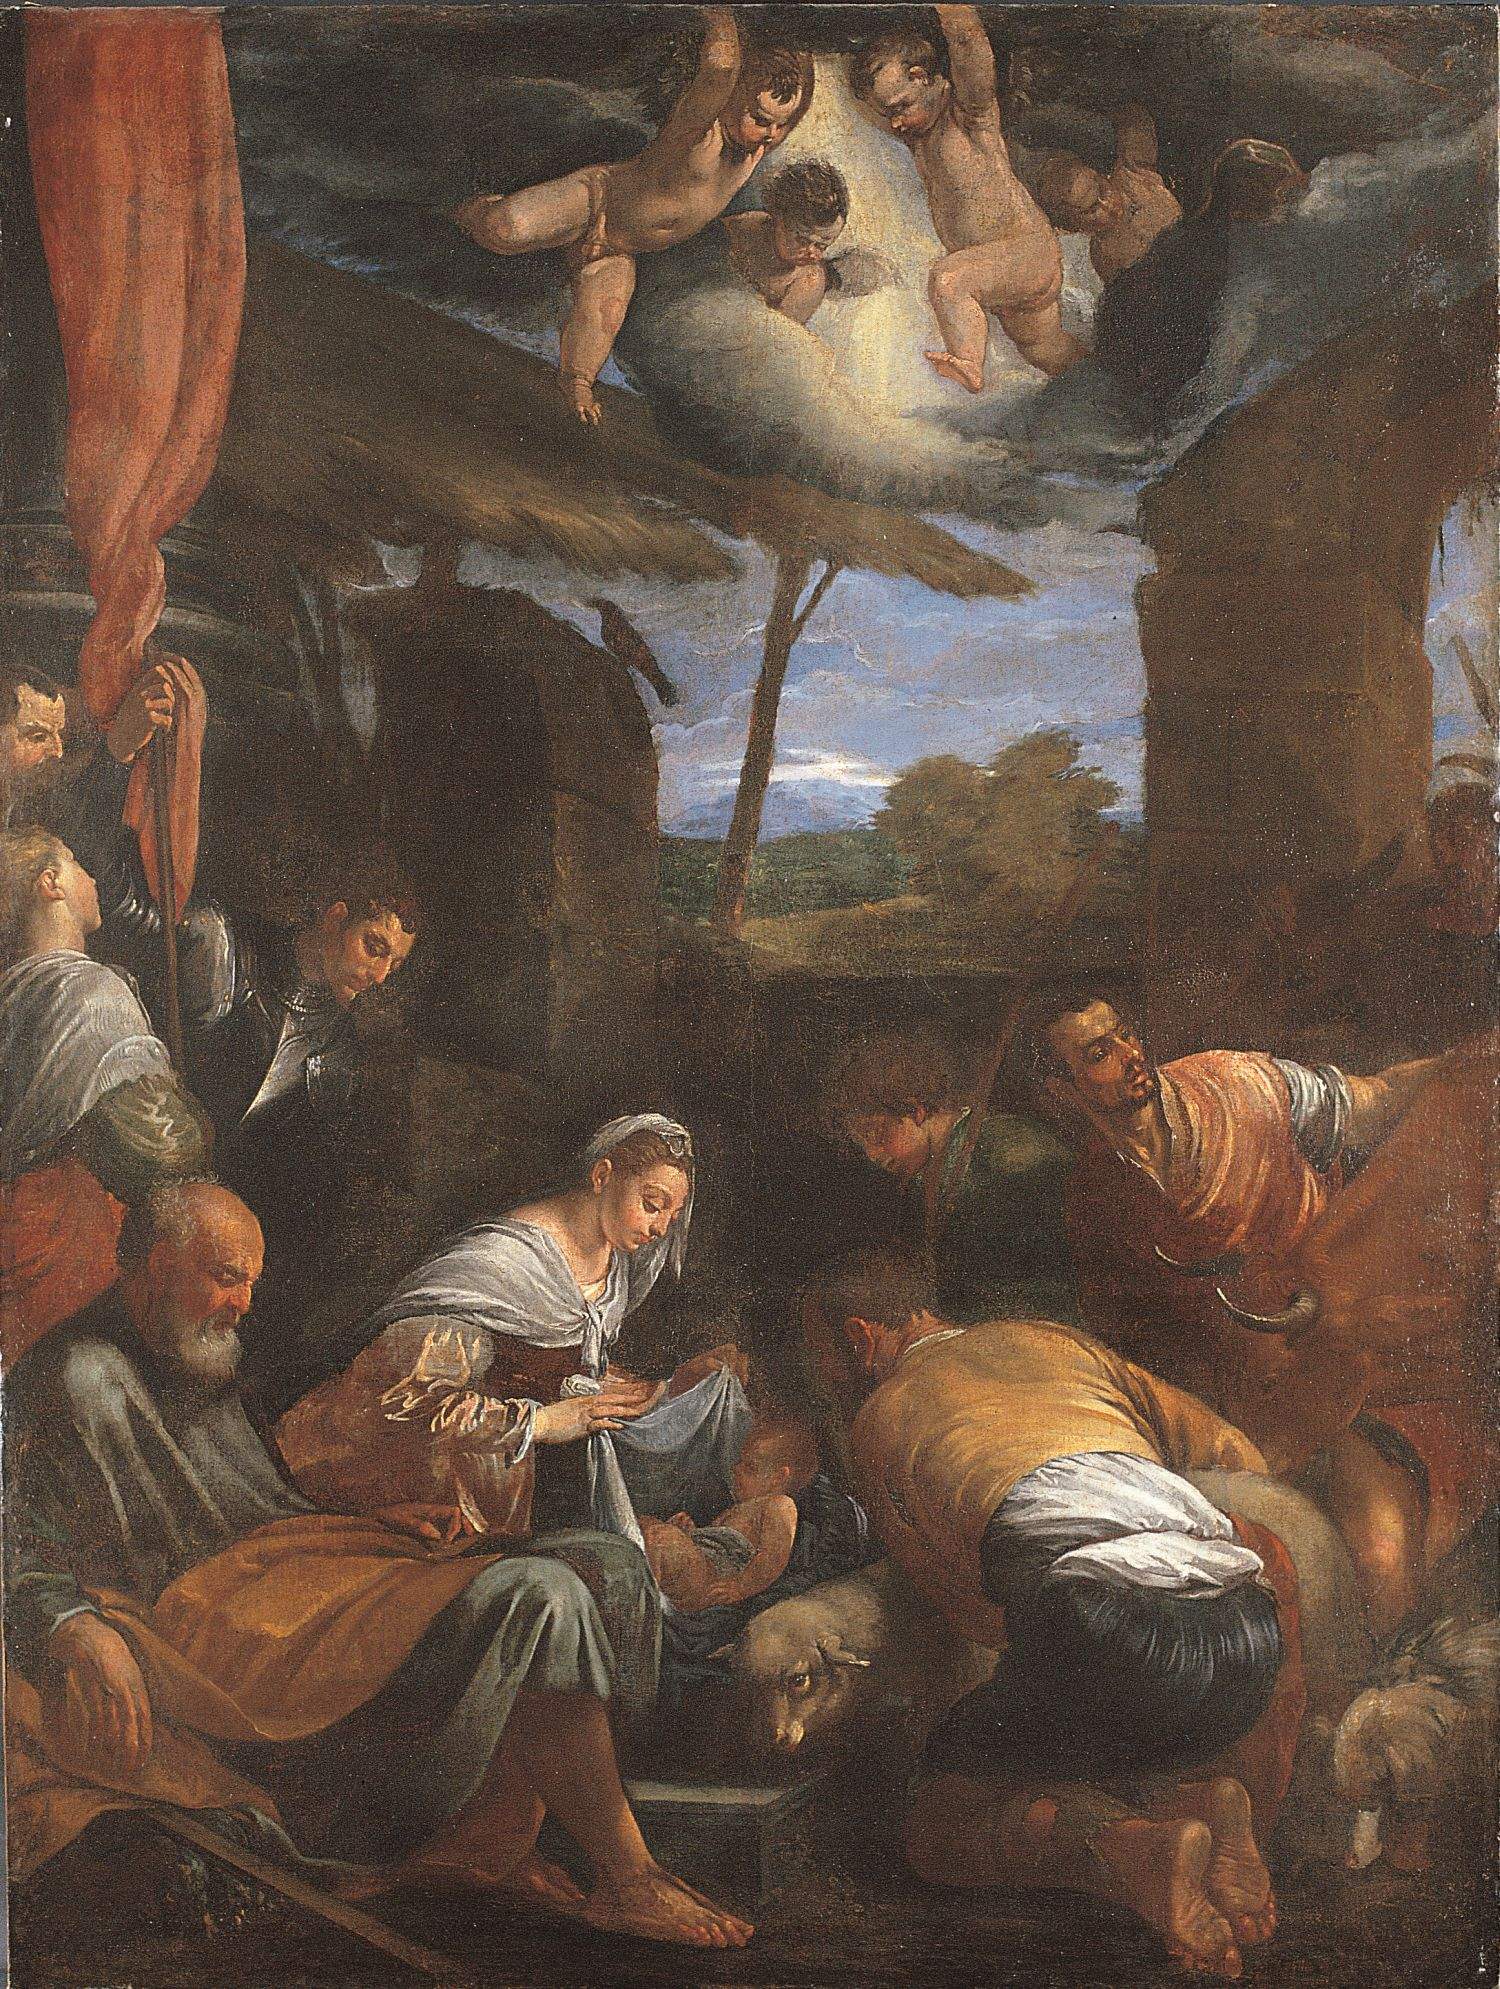 Genova, il secentesco “Presepe di san Giuseppe” di Domenico Parodi esposto a Palazzo Reale per le feste